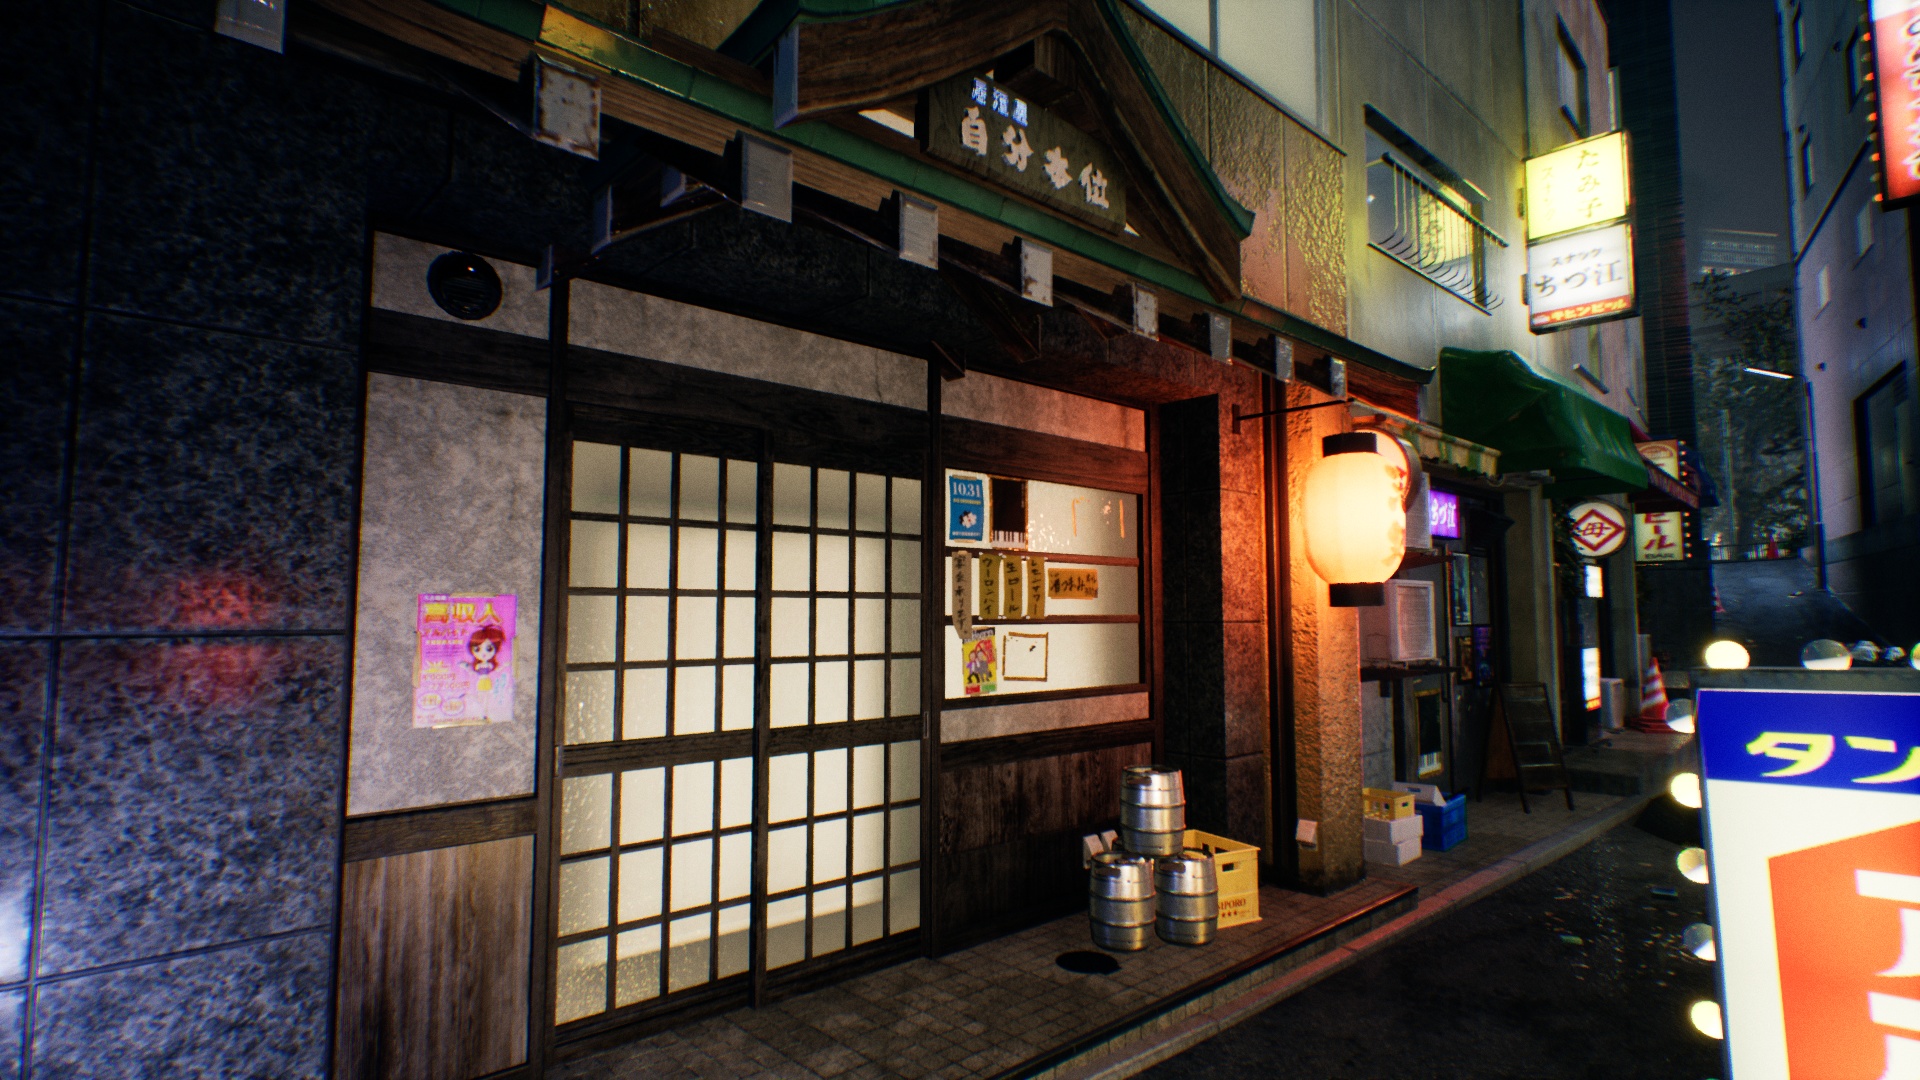 Nos becos estreitos encontramos também estes pequenos comensais tradicionais típicos, para os quais existe a série Midnight Diner: Tokyo Stories on Netfix